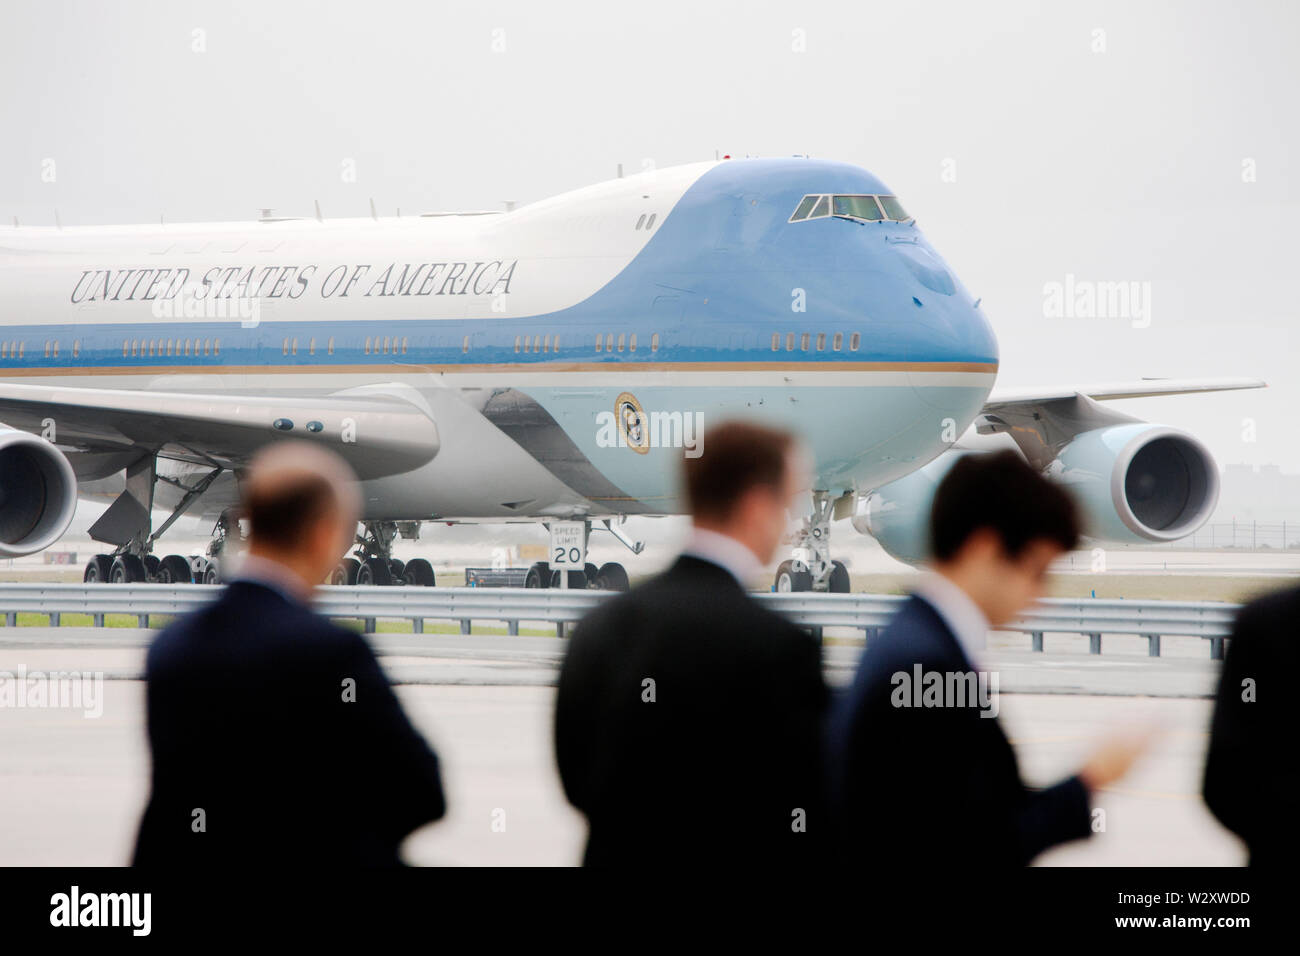 Le Service secret et le personnel d'attendre que le président américain Barack Obama arrive sur l'Air Force One à New York pour assister à plusieurs levées de fonds pour sa campagne de réélection. Banque D'Images